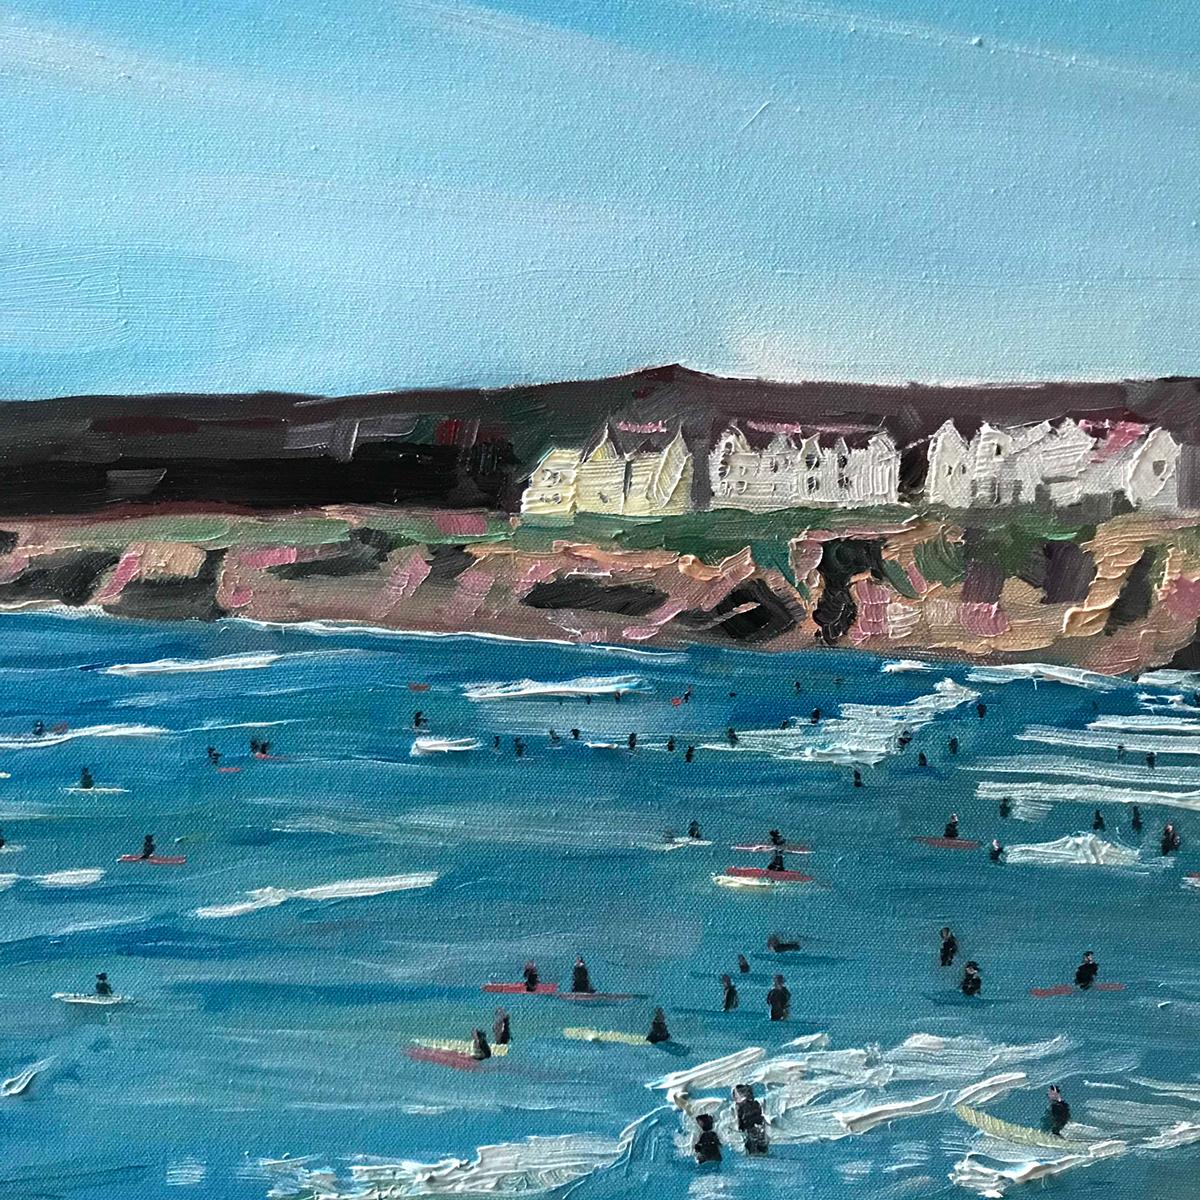 Polzeath Beach, Cornwall, Original painting, Oil on canvas, Coastal art, Beach For Sale 11